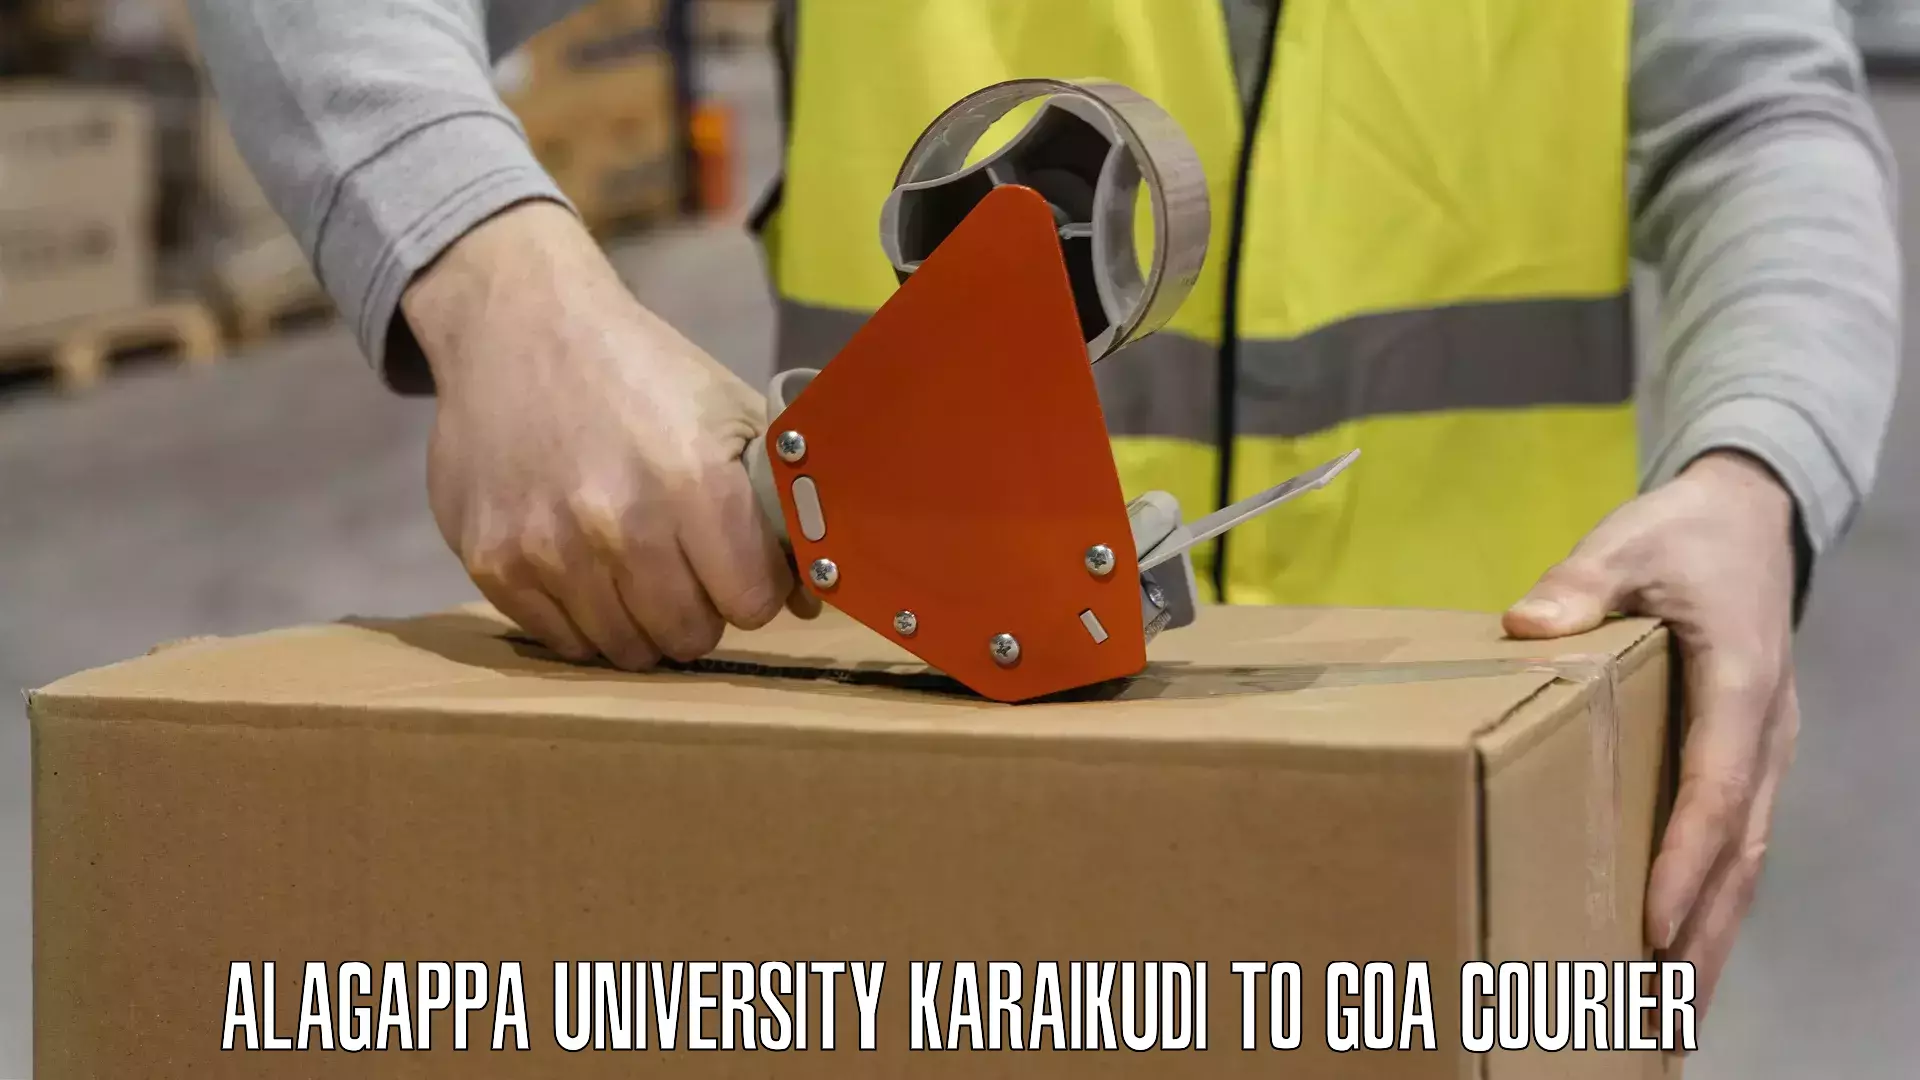 Digital courier platforms Alagappa University Karaikudi to Goa